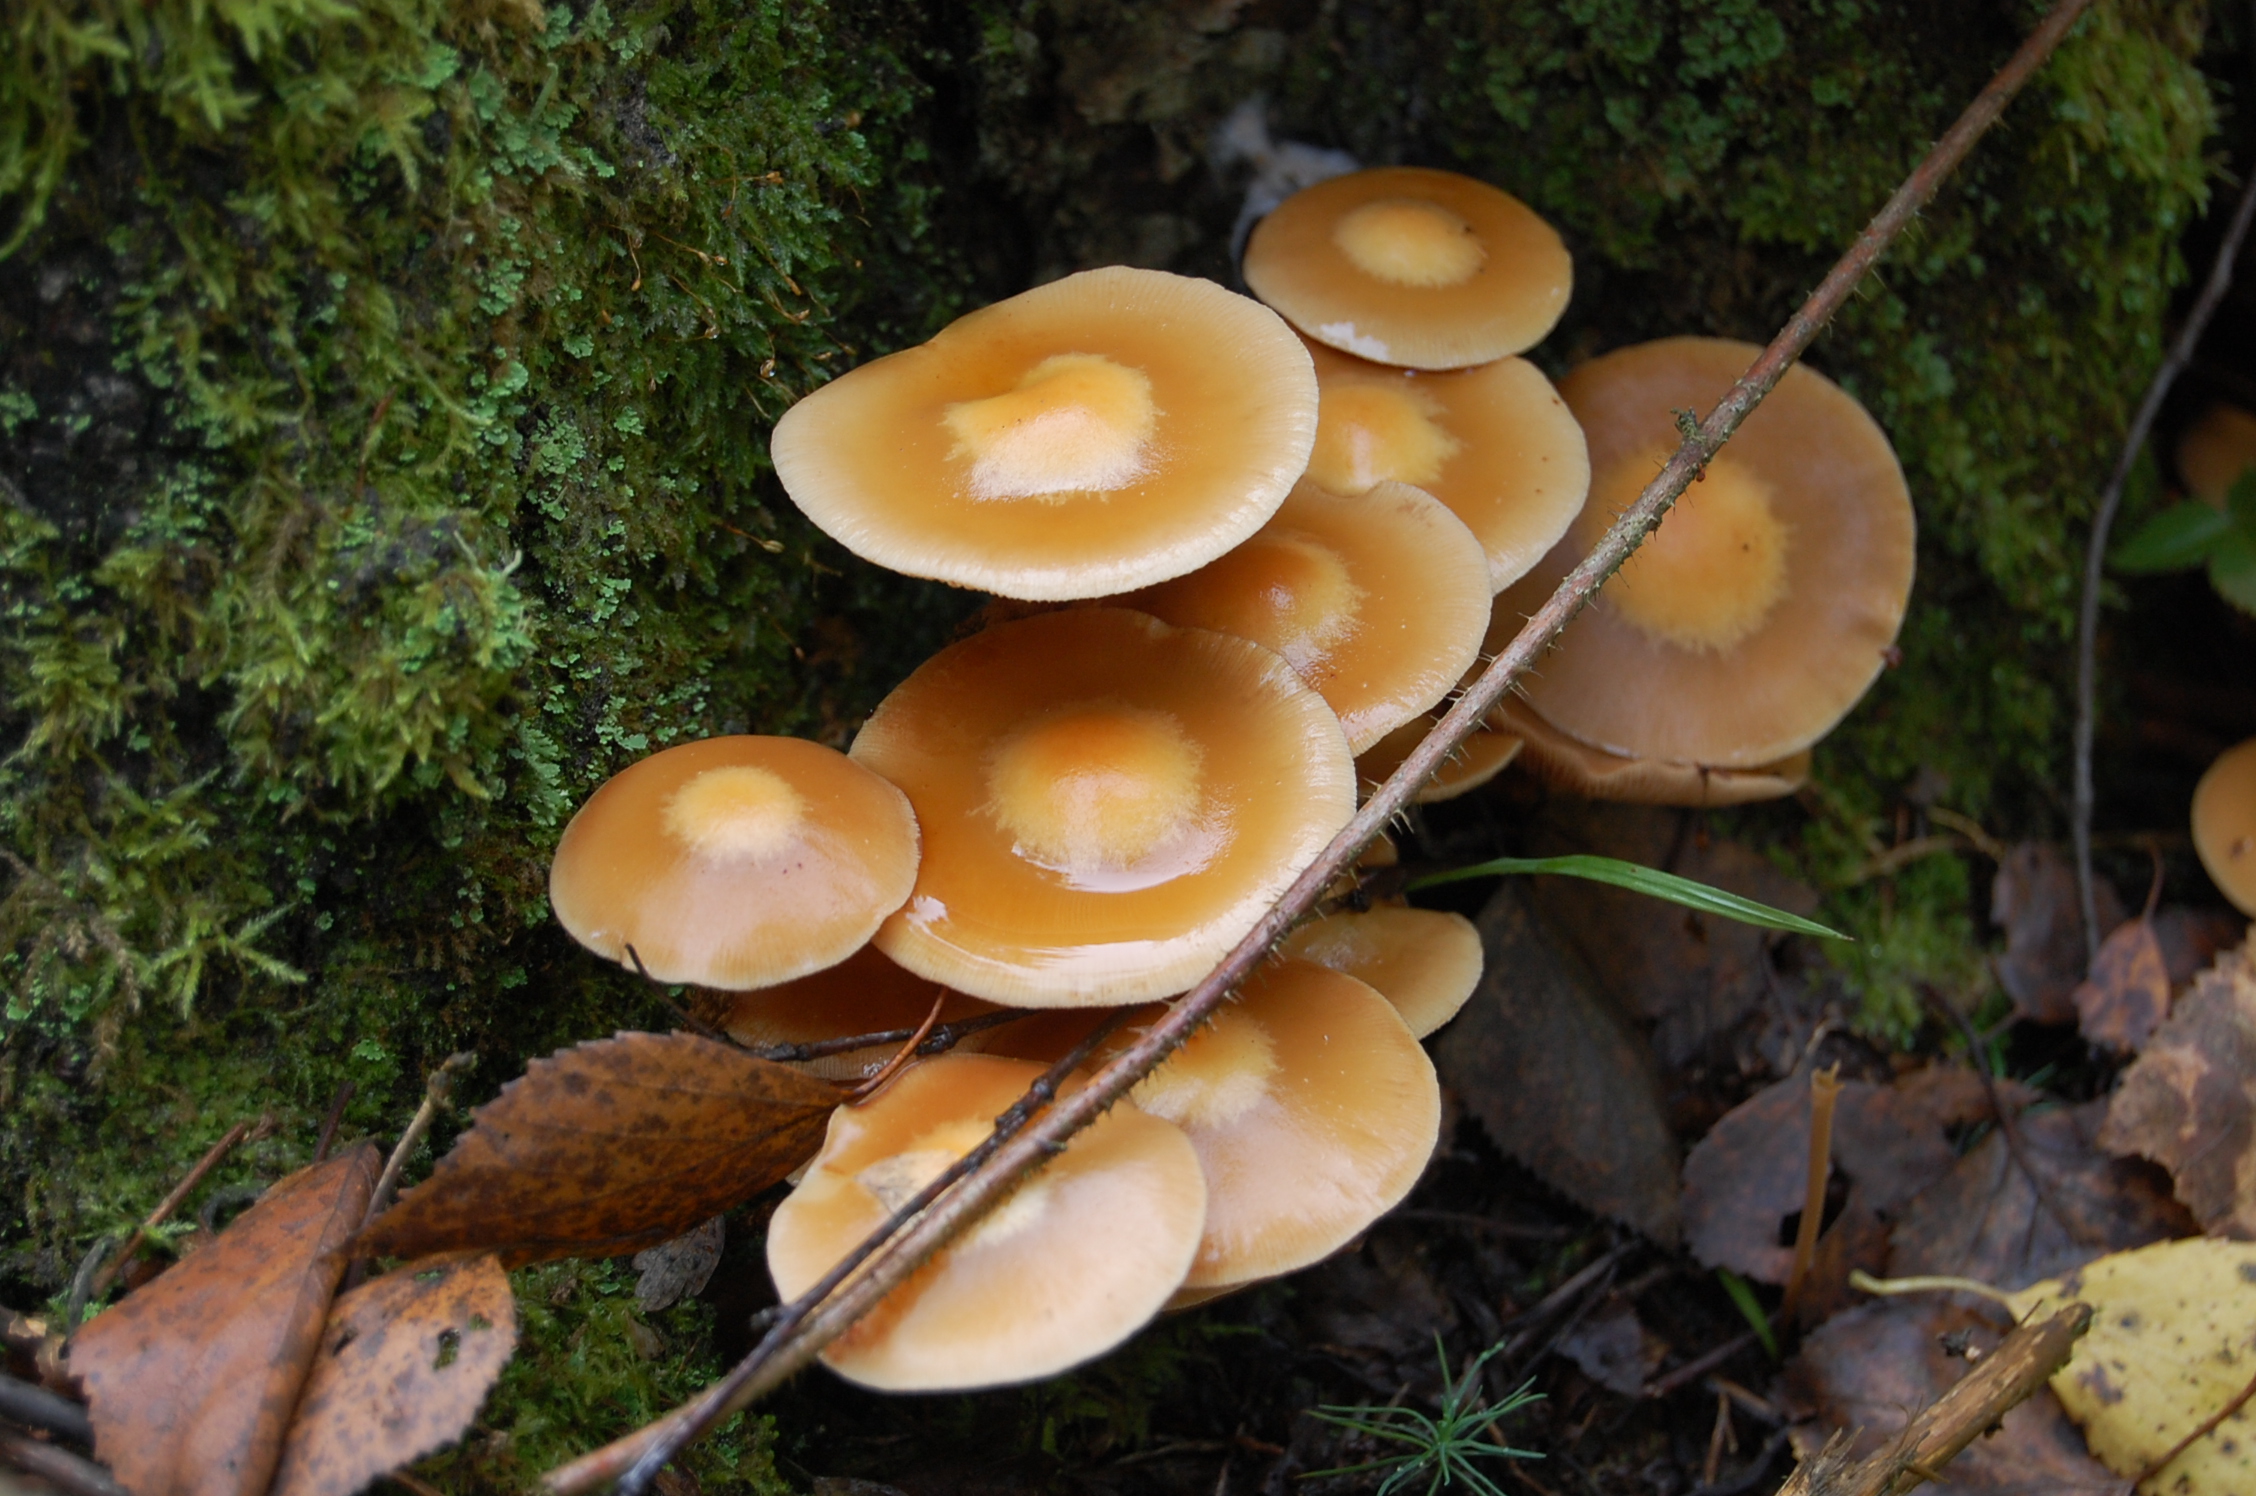 Фото грибы опята съедобные фото